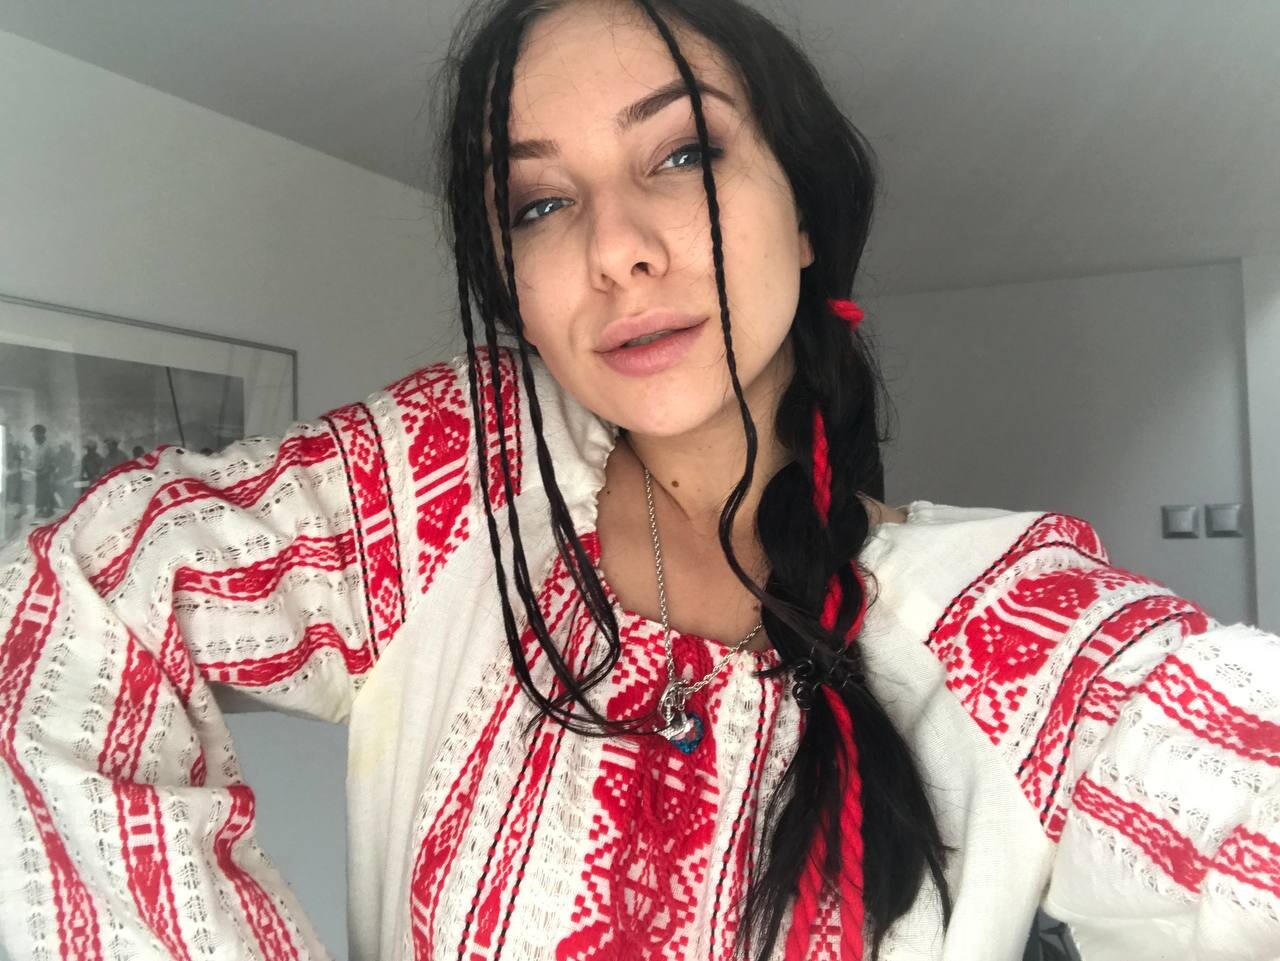 Iryna chicas rusas instagram